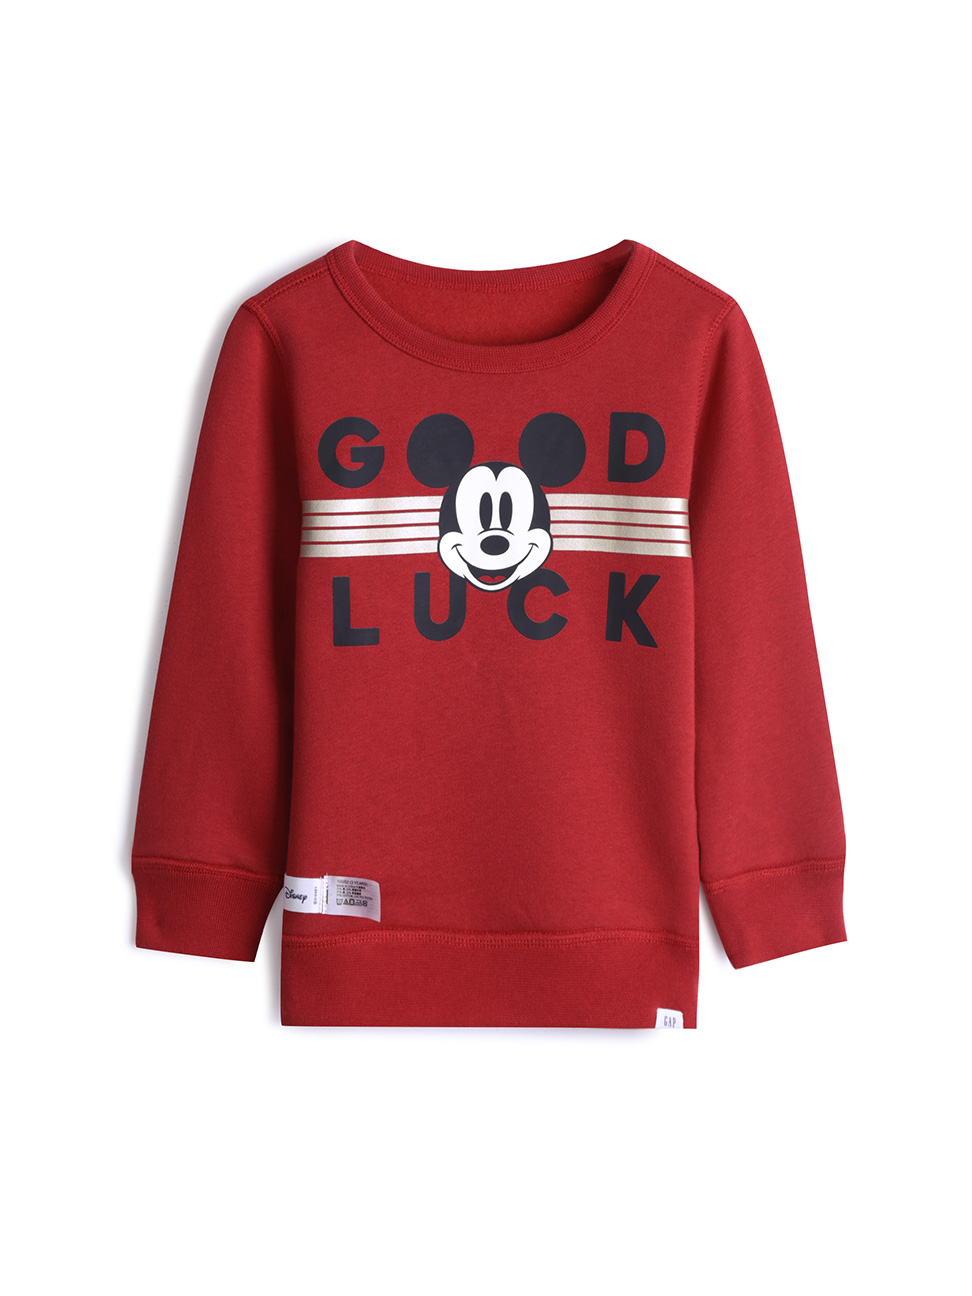 男幼童裝|Gap x Disney迪士尼聯名 米奇印花大學T-摩登紅色